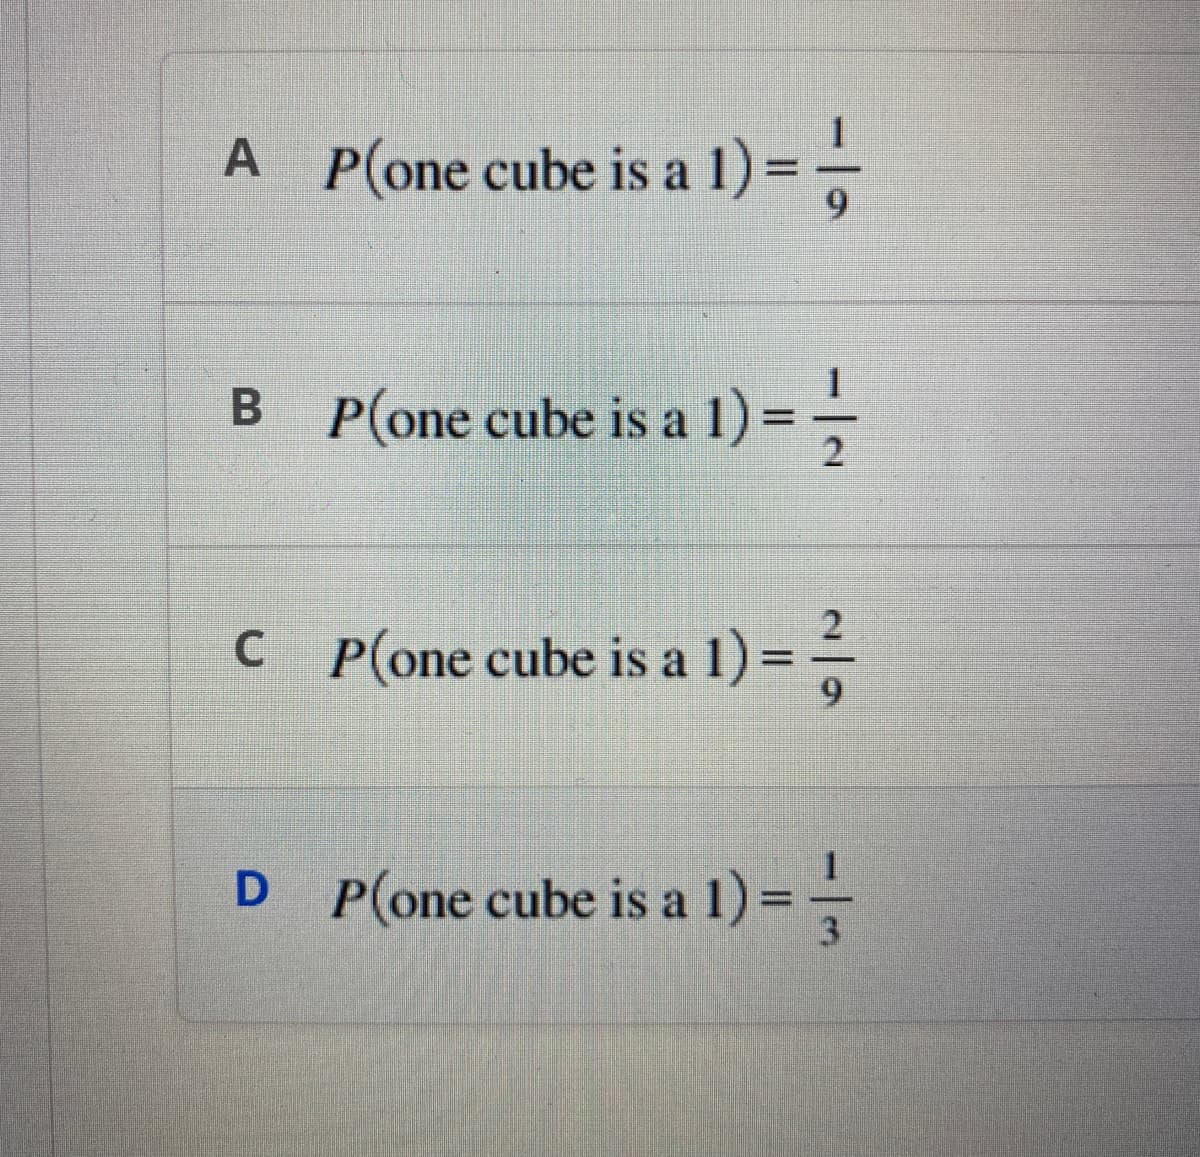 A P(one cube is a 1) =-=-=-
B
P(one cube is a 1) ===
2
C_P(one cube is a 1) ==
D P(one cube is a 1) ===